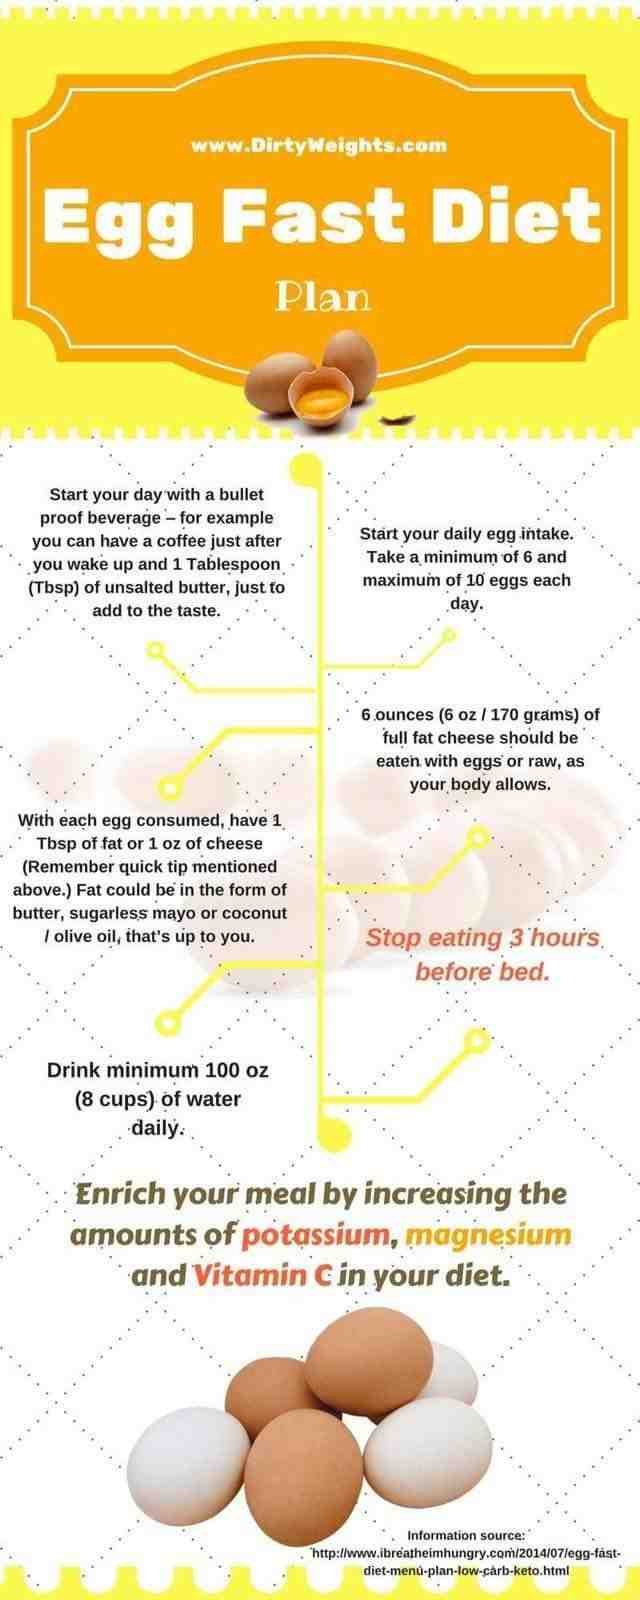 Comment préparer les œufs pour maigrir ?